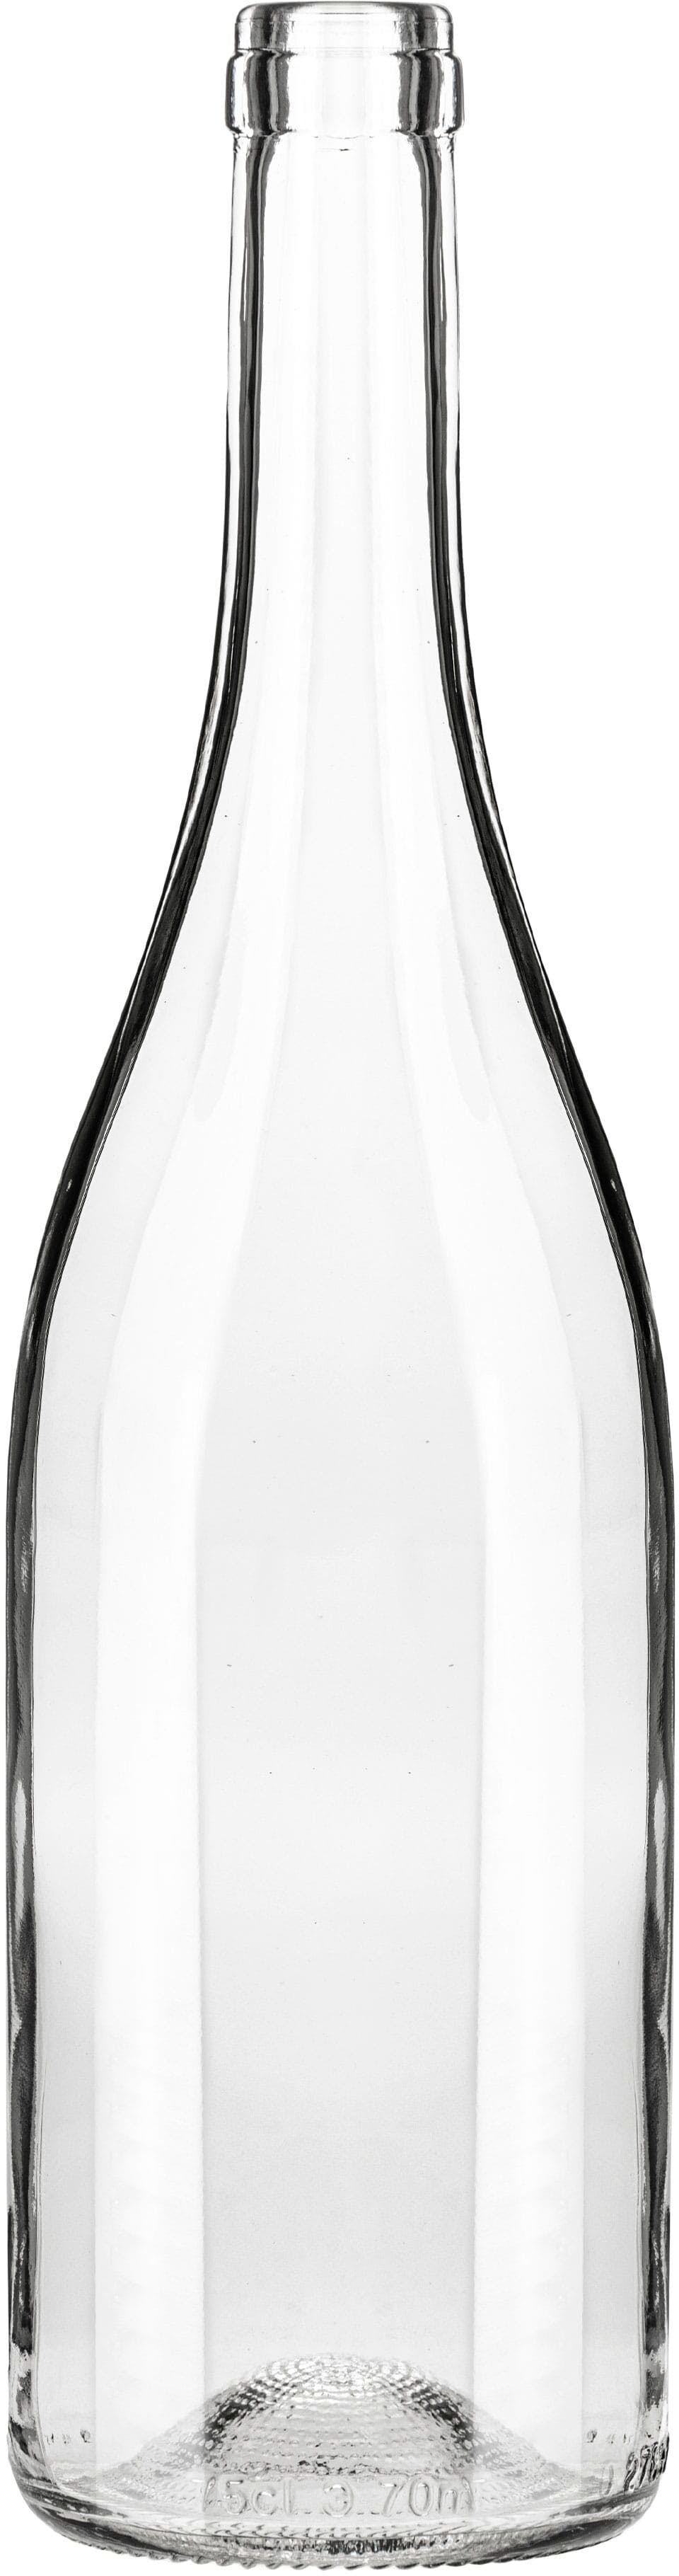 Bottiglia NUOVA  750 ml BG-Sughero